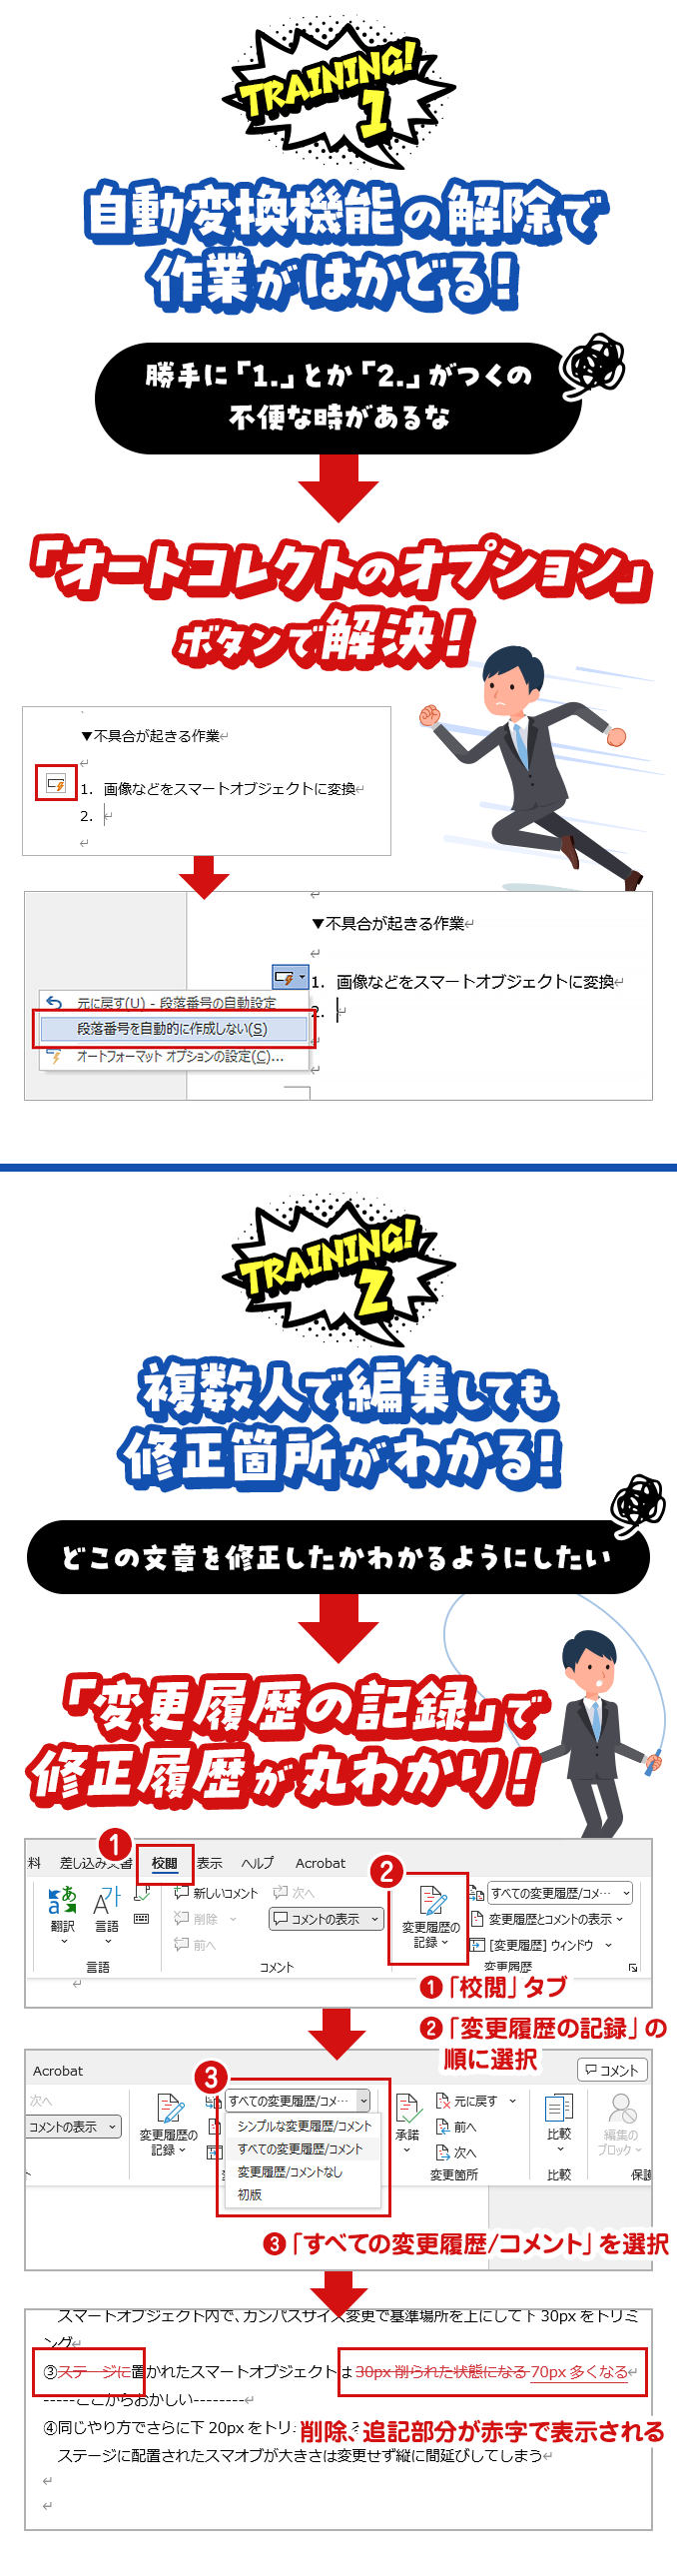 【Training1】自動変換機能の解除で作業がはかどる！。【Training2】複数人で編集しても修正箇所がわかる！